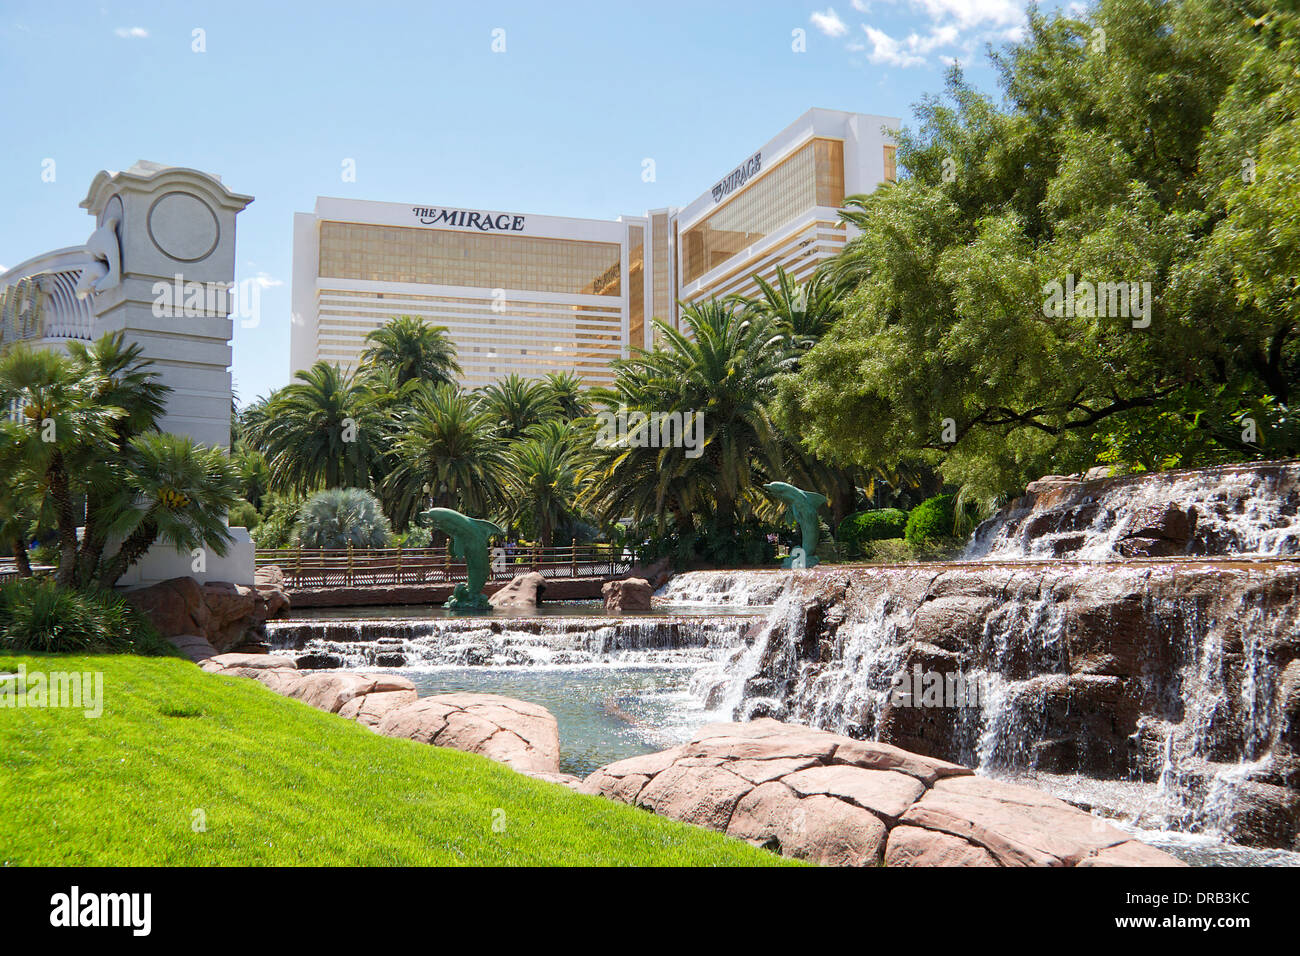 The Mirage Hotel and Casino, Las Vegas Strip, Las Vegas, Nevada, USA Stock Photo